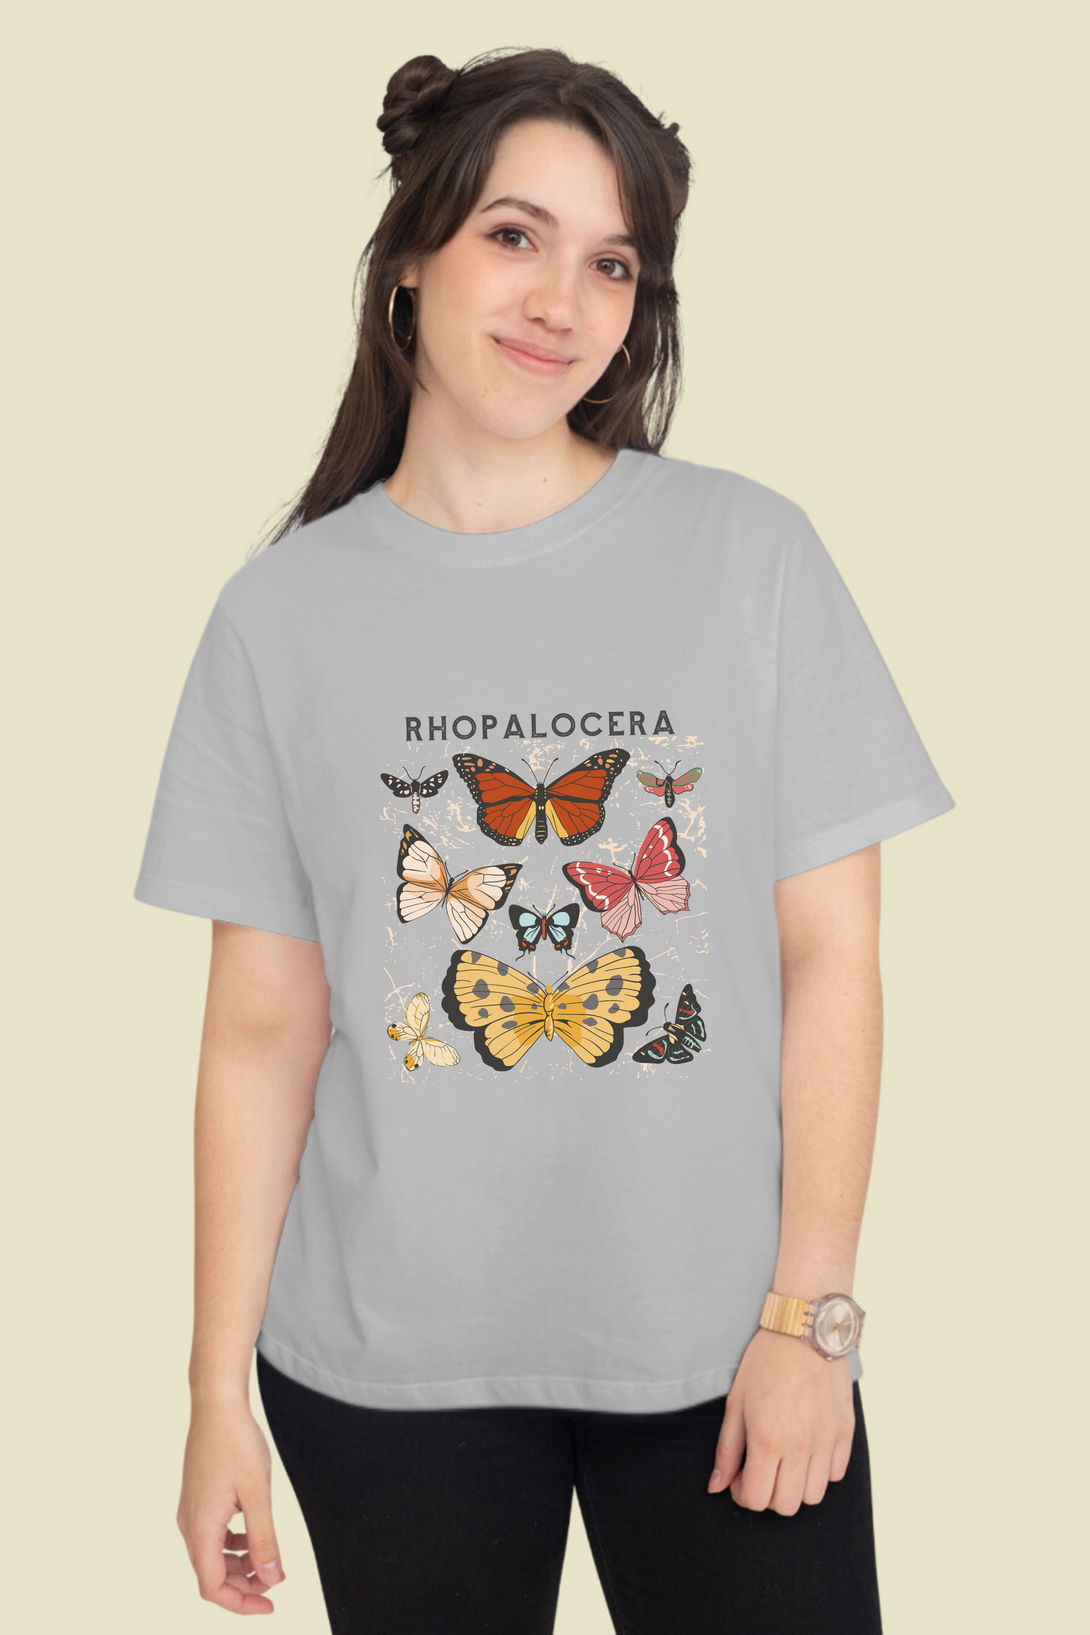 Rhopalocera Printed T-Shirt For Women - WowWaves - 7